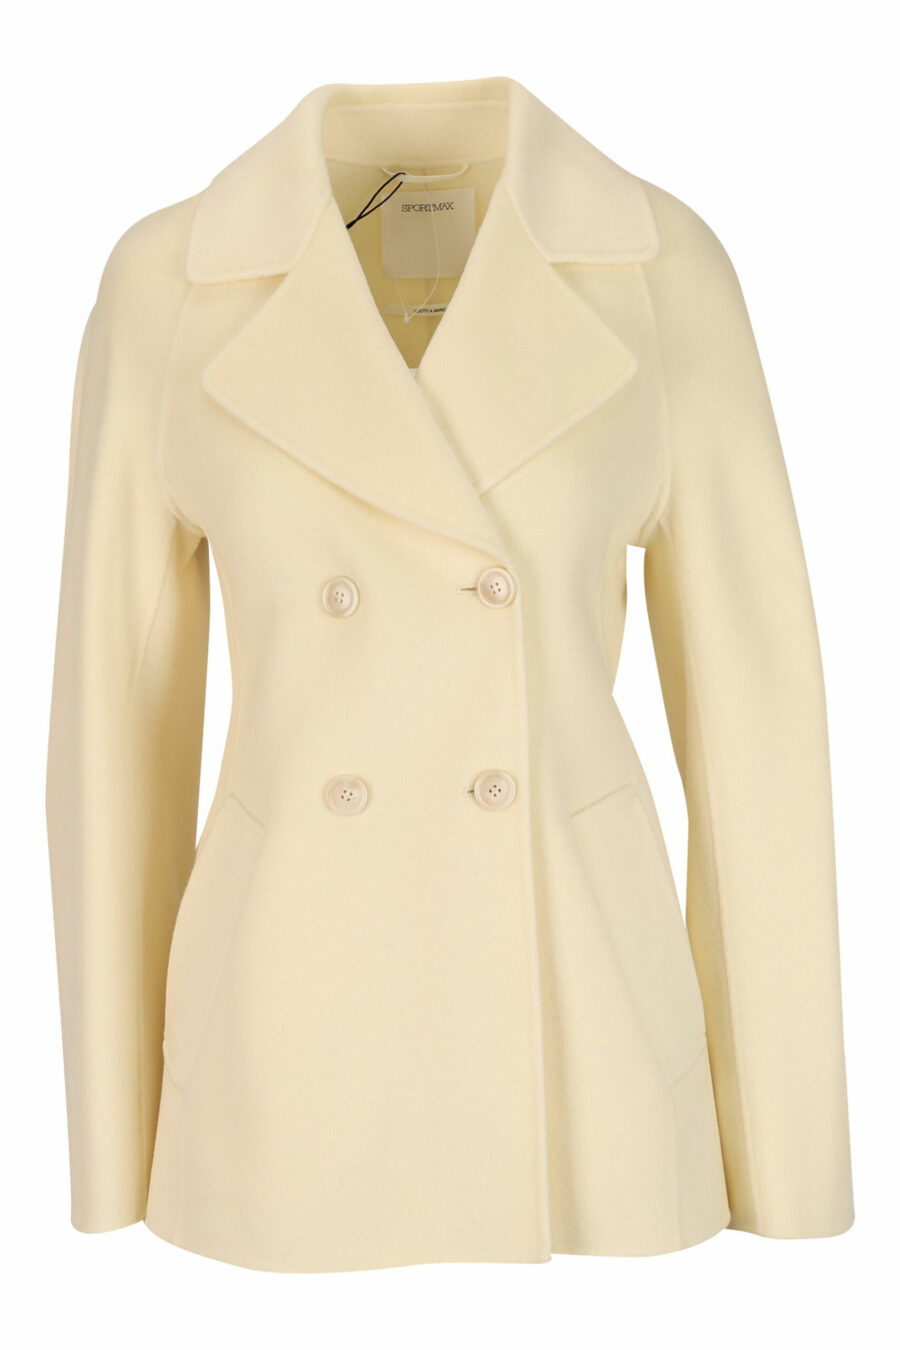 Manteau court de couleur vanille avec ceinture - 20810241060082 écaillé